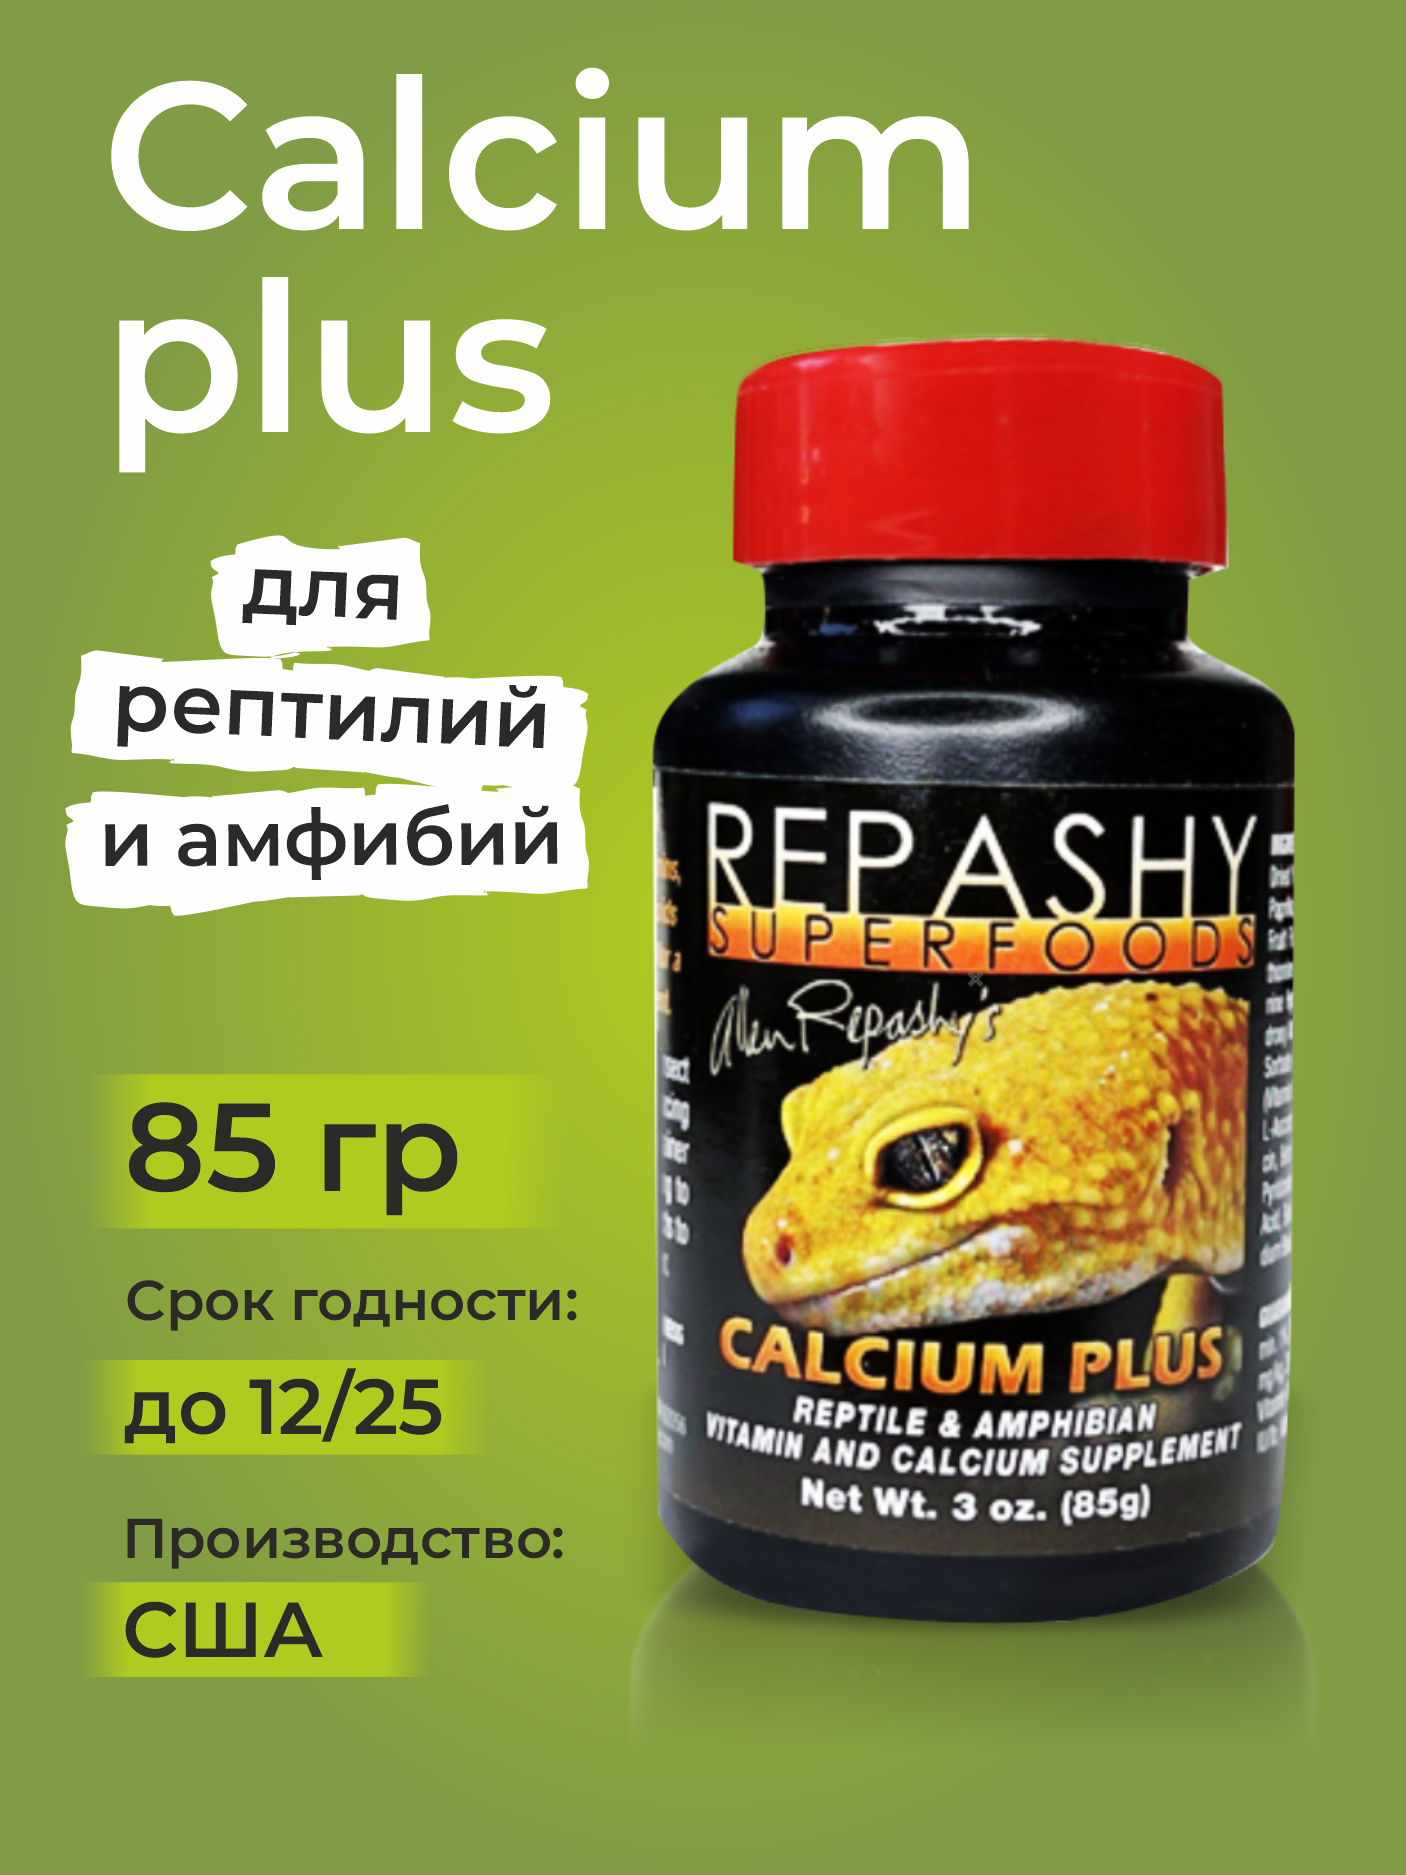 Repashy Calcium Plus, 85 г - кальций для рептилий, бананоедов, фельзум, хамелеонов